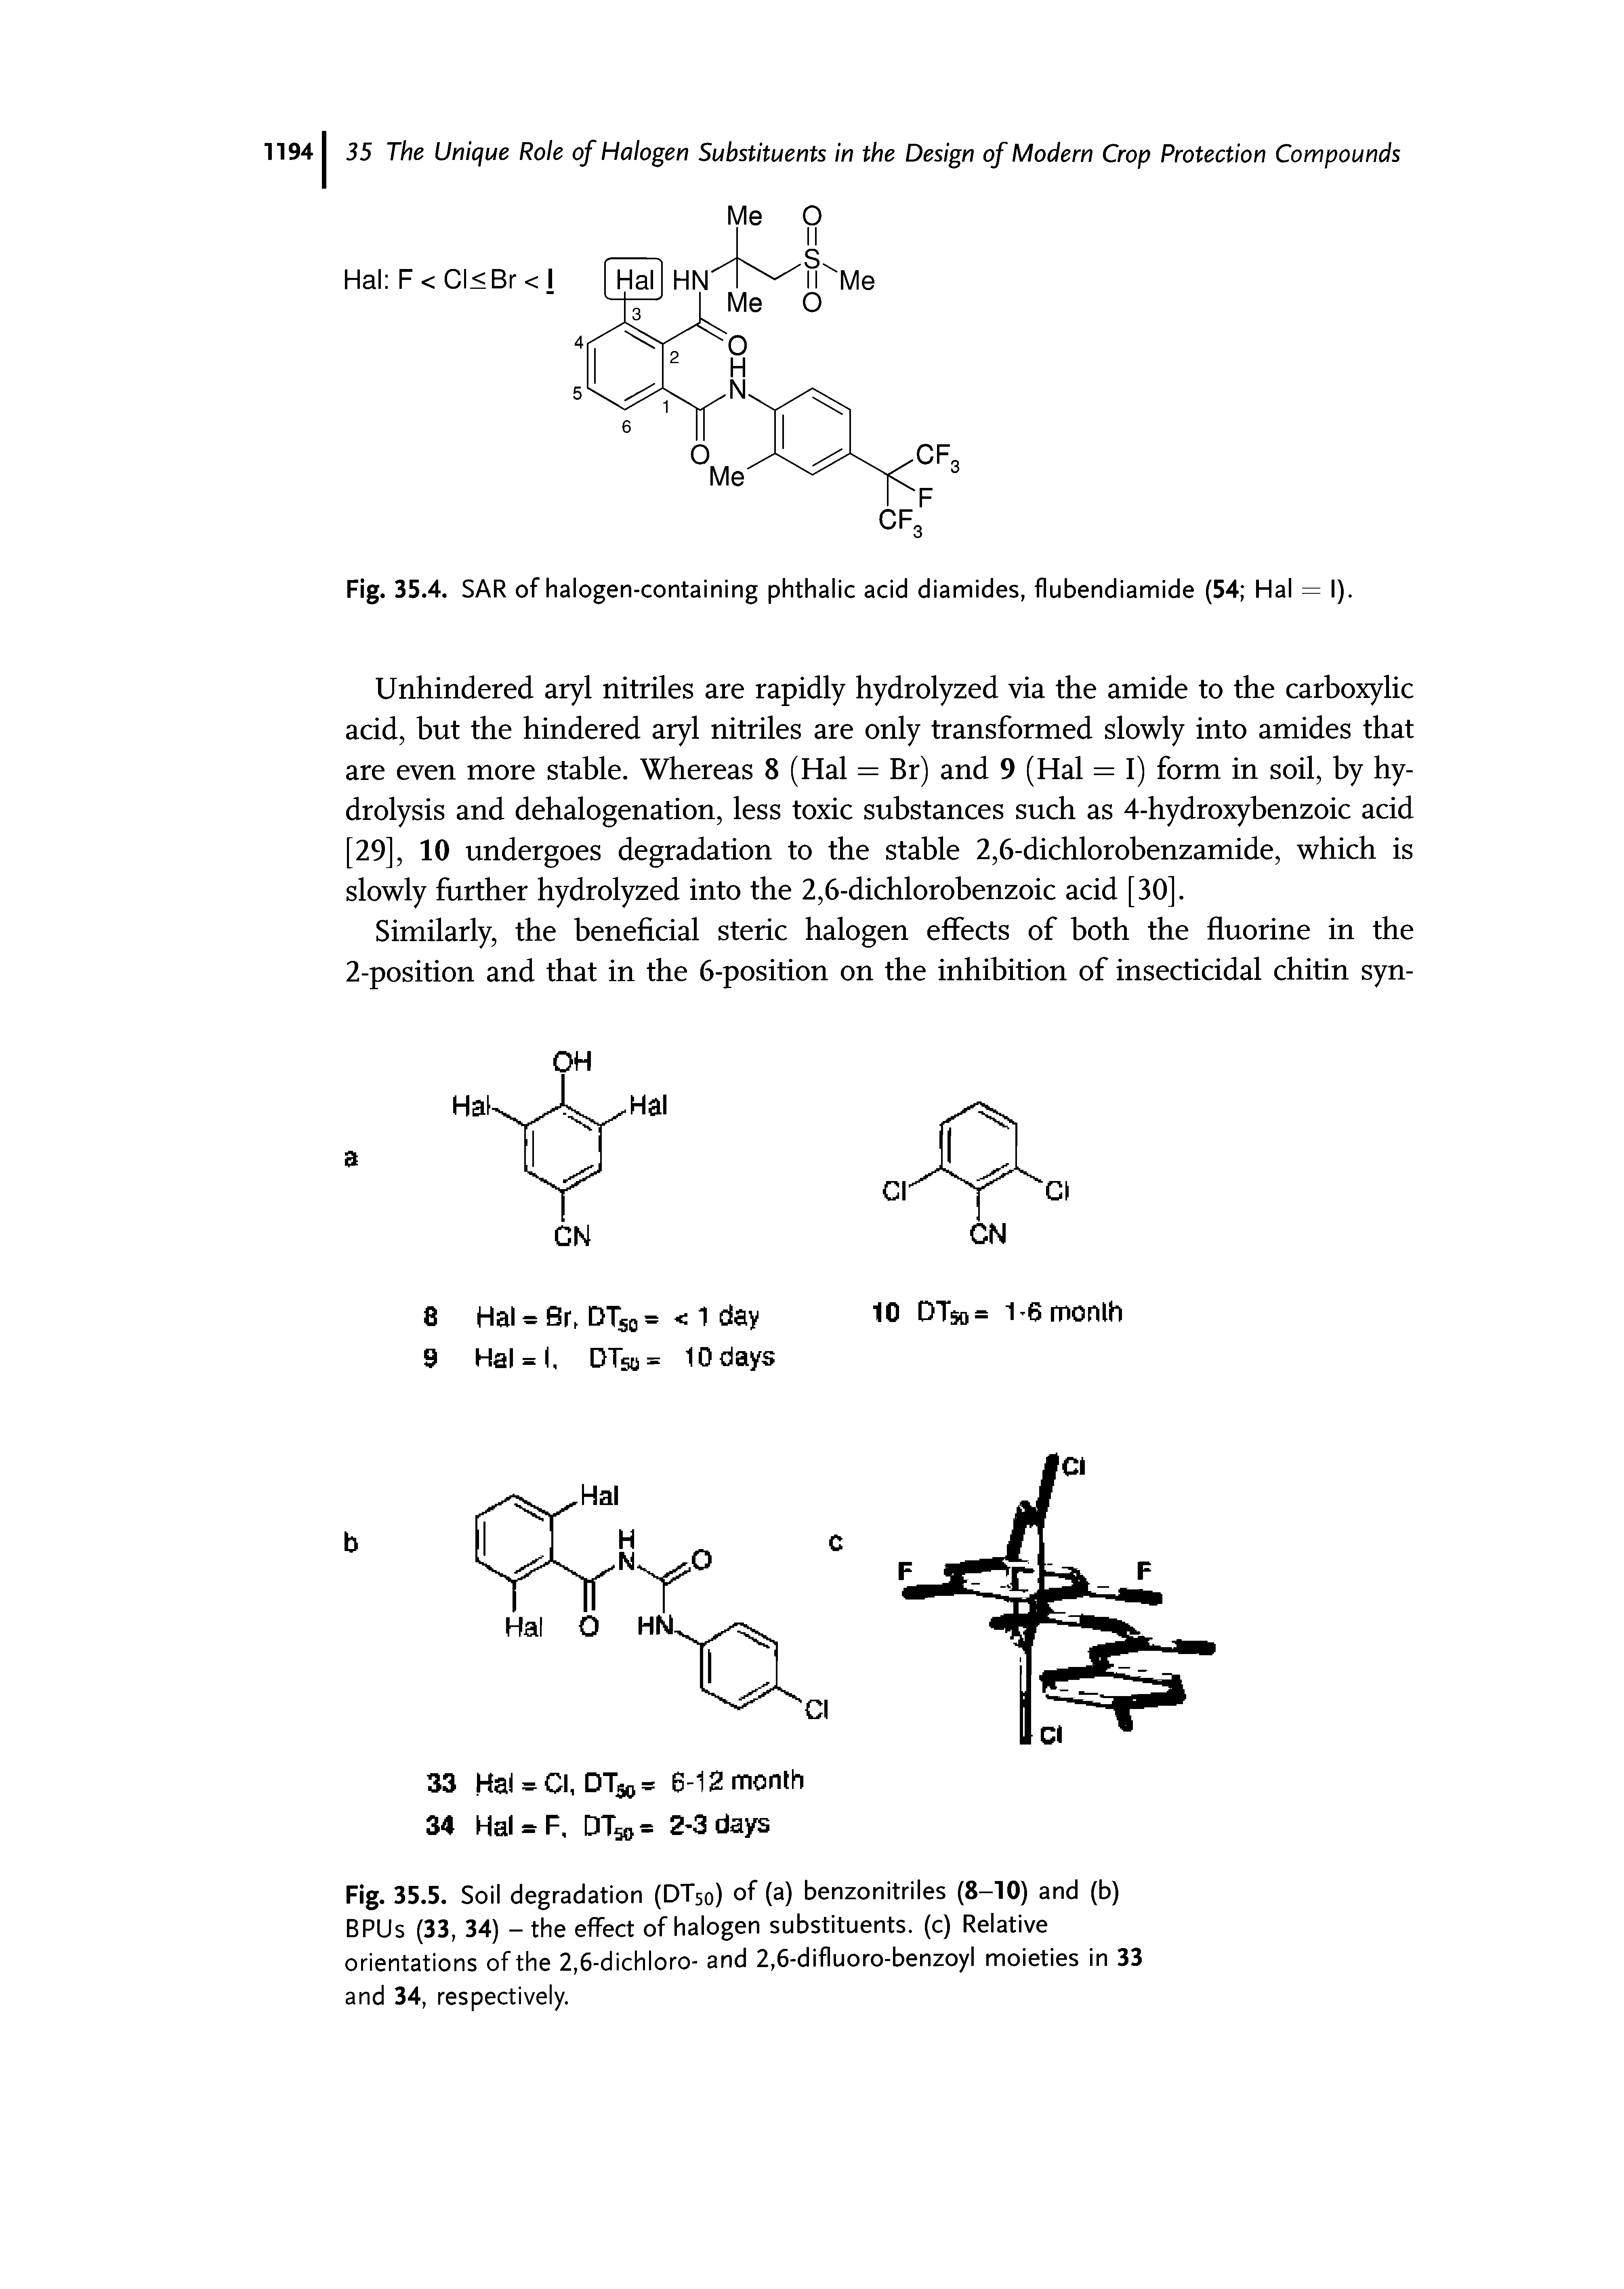 Fig. 35.4. SAR of halogen-containing phthalic acid diamides, flubendiamide (54 Hal = I).